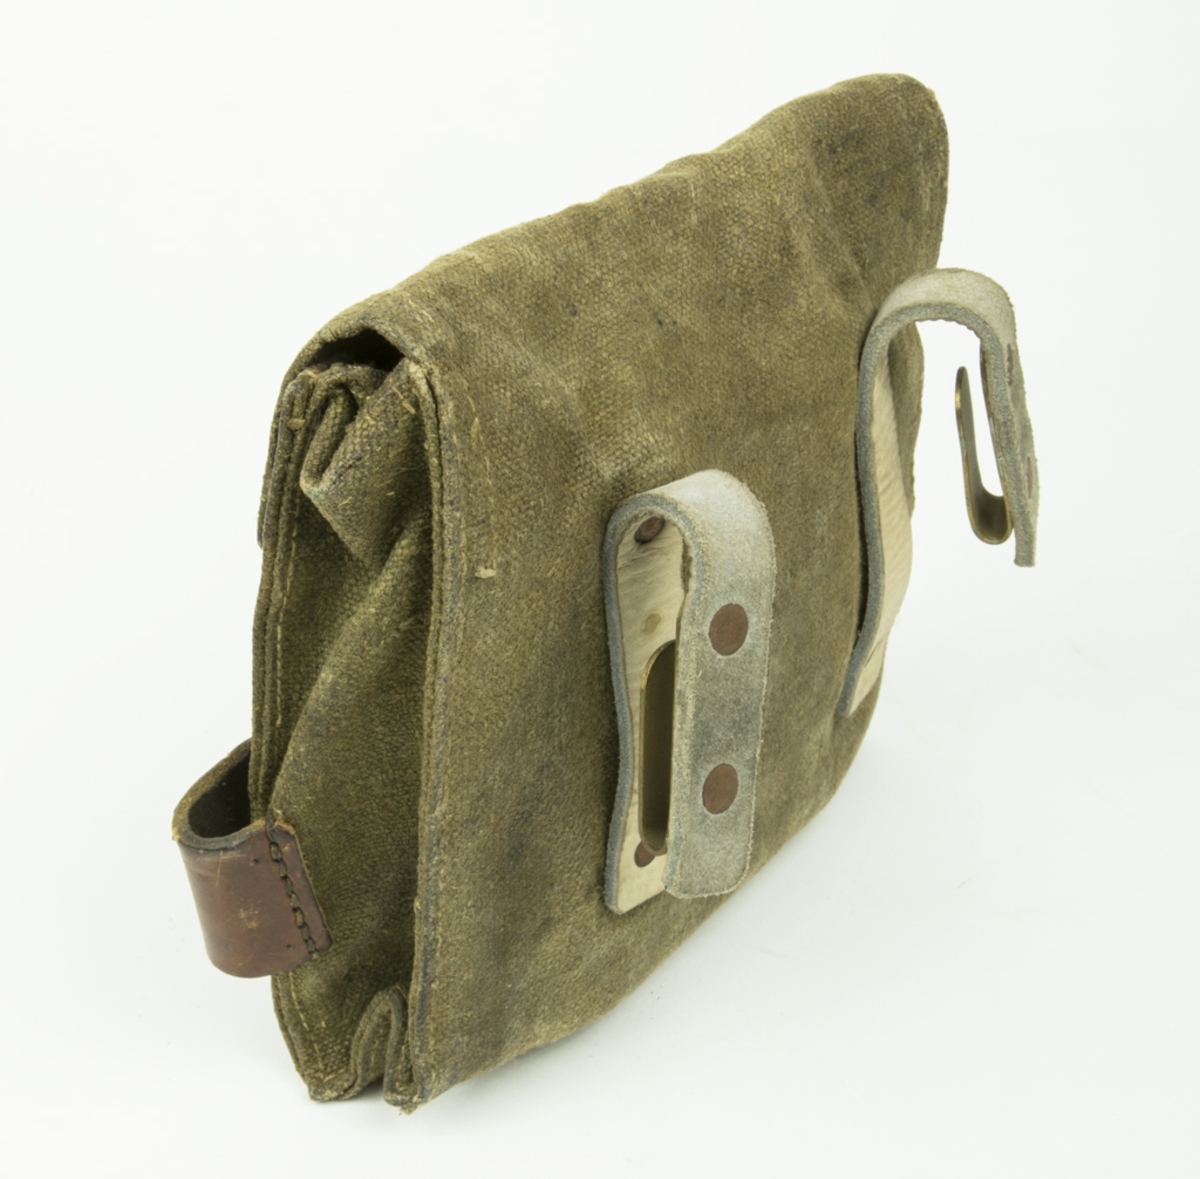 Verktygsväska innehållande 1 plattång med läderband, spik, träknoppar mm. Fastsättning i bälte